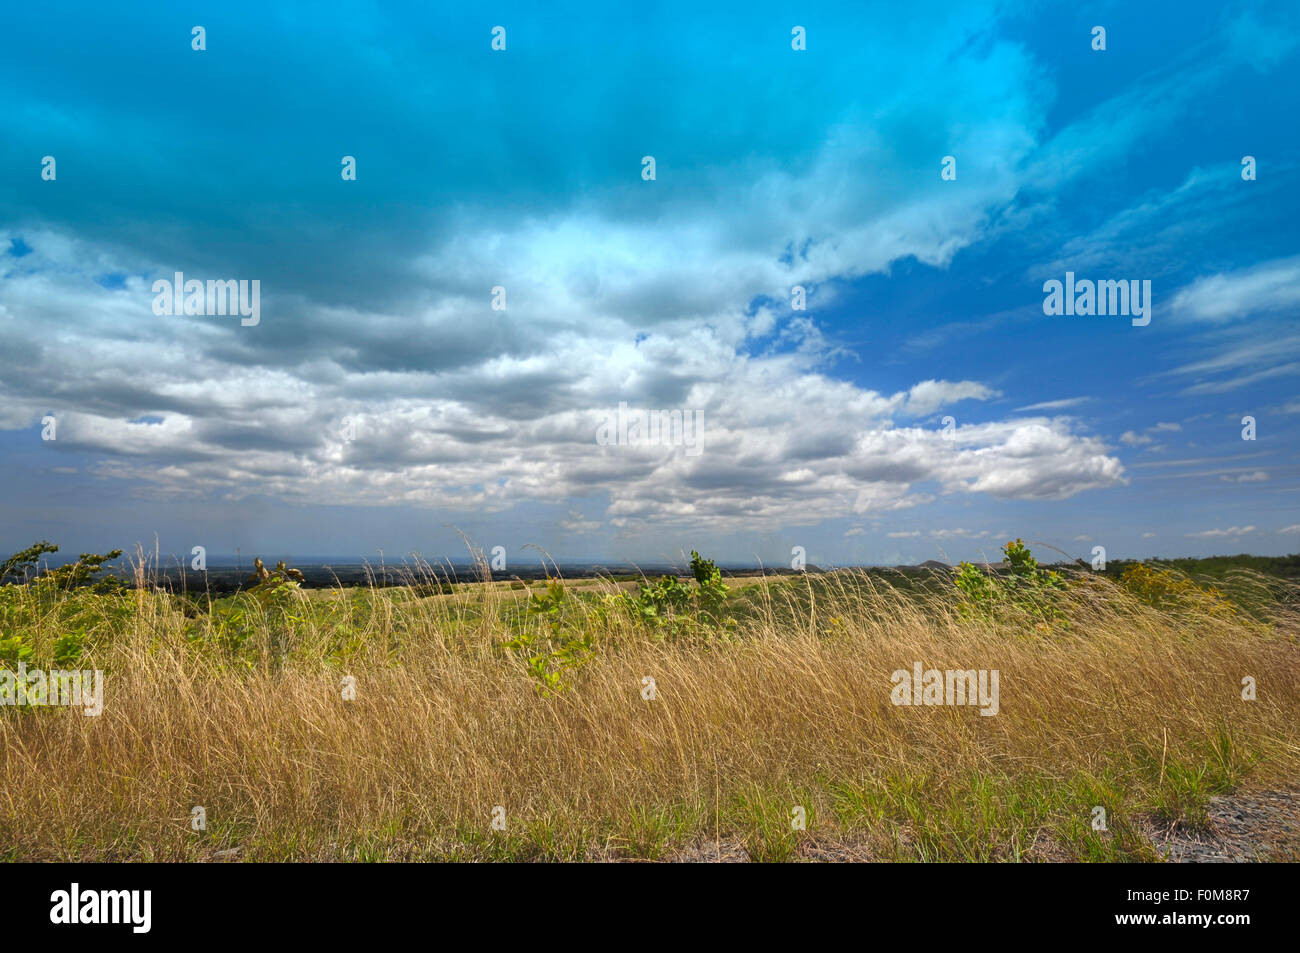 Schöner Blick auf die Berge mit hohe Gräser und strahlend blauer Himmel mit geschwollenen Wolken getan ein HDR-Bild Stockfoto